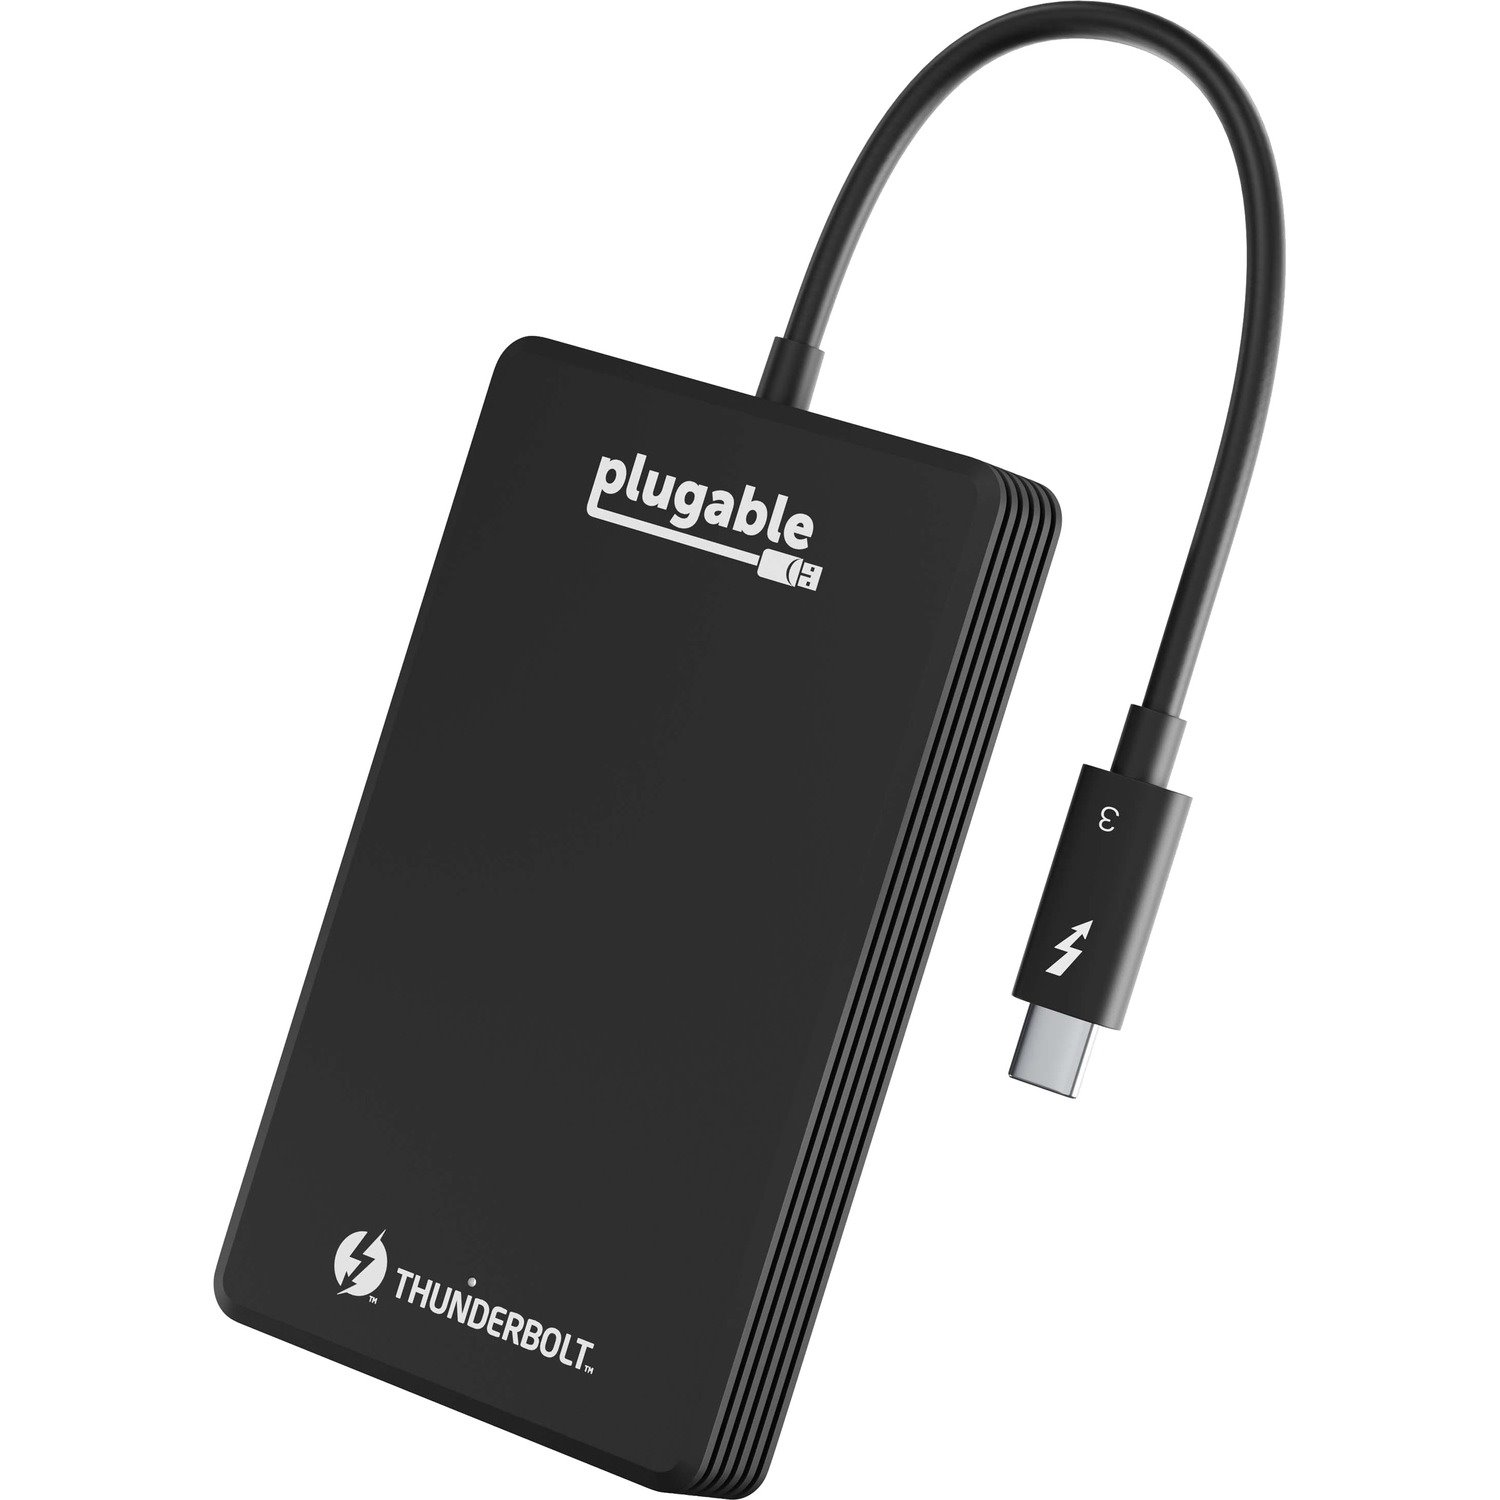 Plugable 512GB Thunderbolt 3 External SSD NVMe Drive